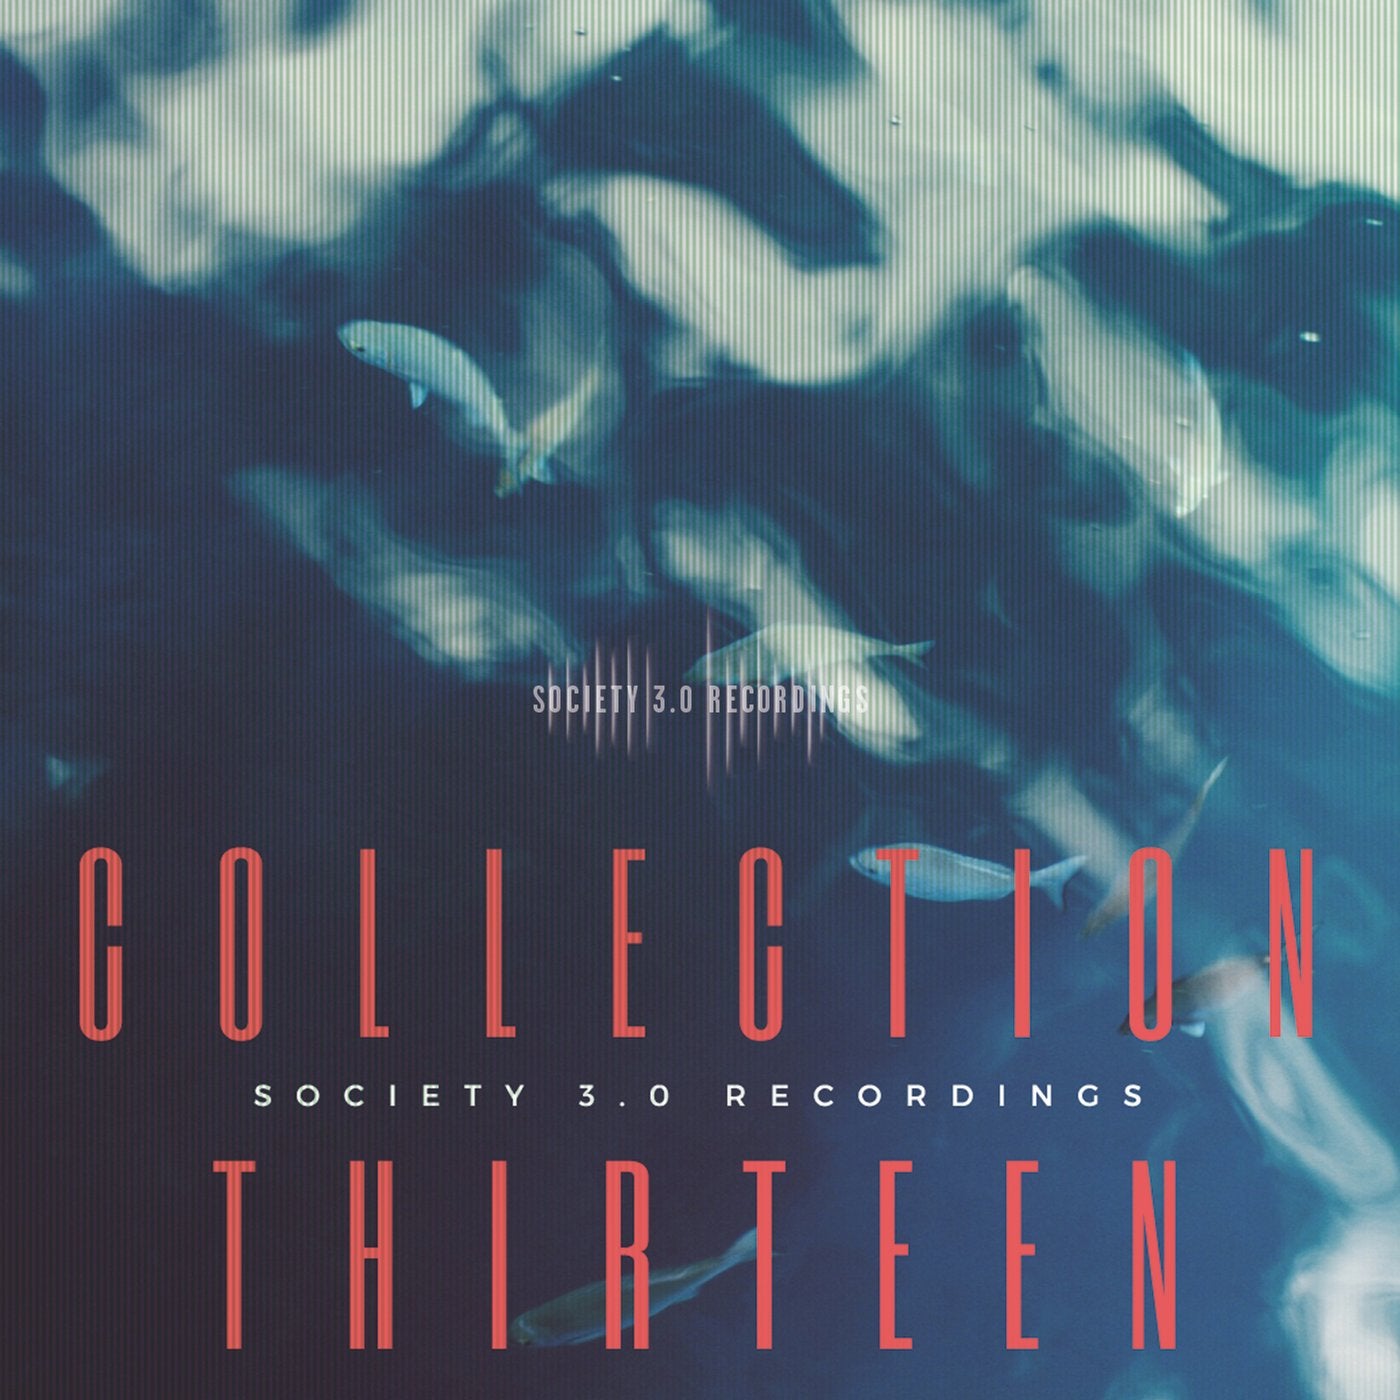 Society 3. Society 3.0 recordings discography III (2021) [Society 3.0].